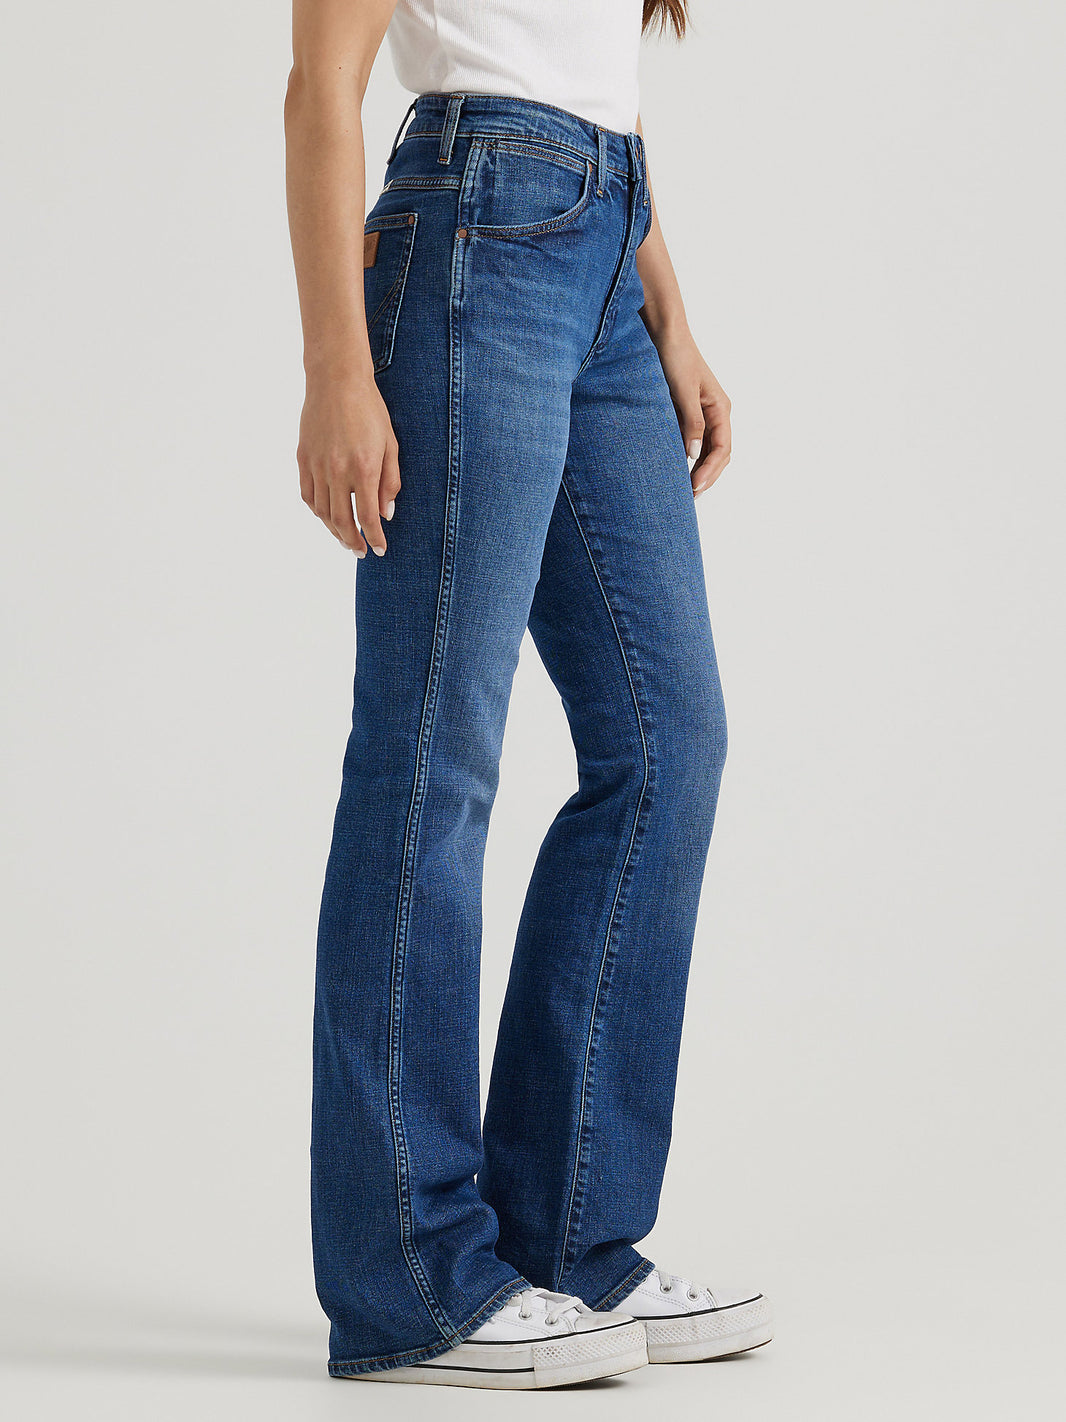 Women's Bootcut Jeans – Wiseman’s Western